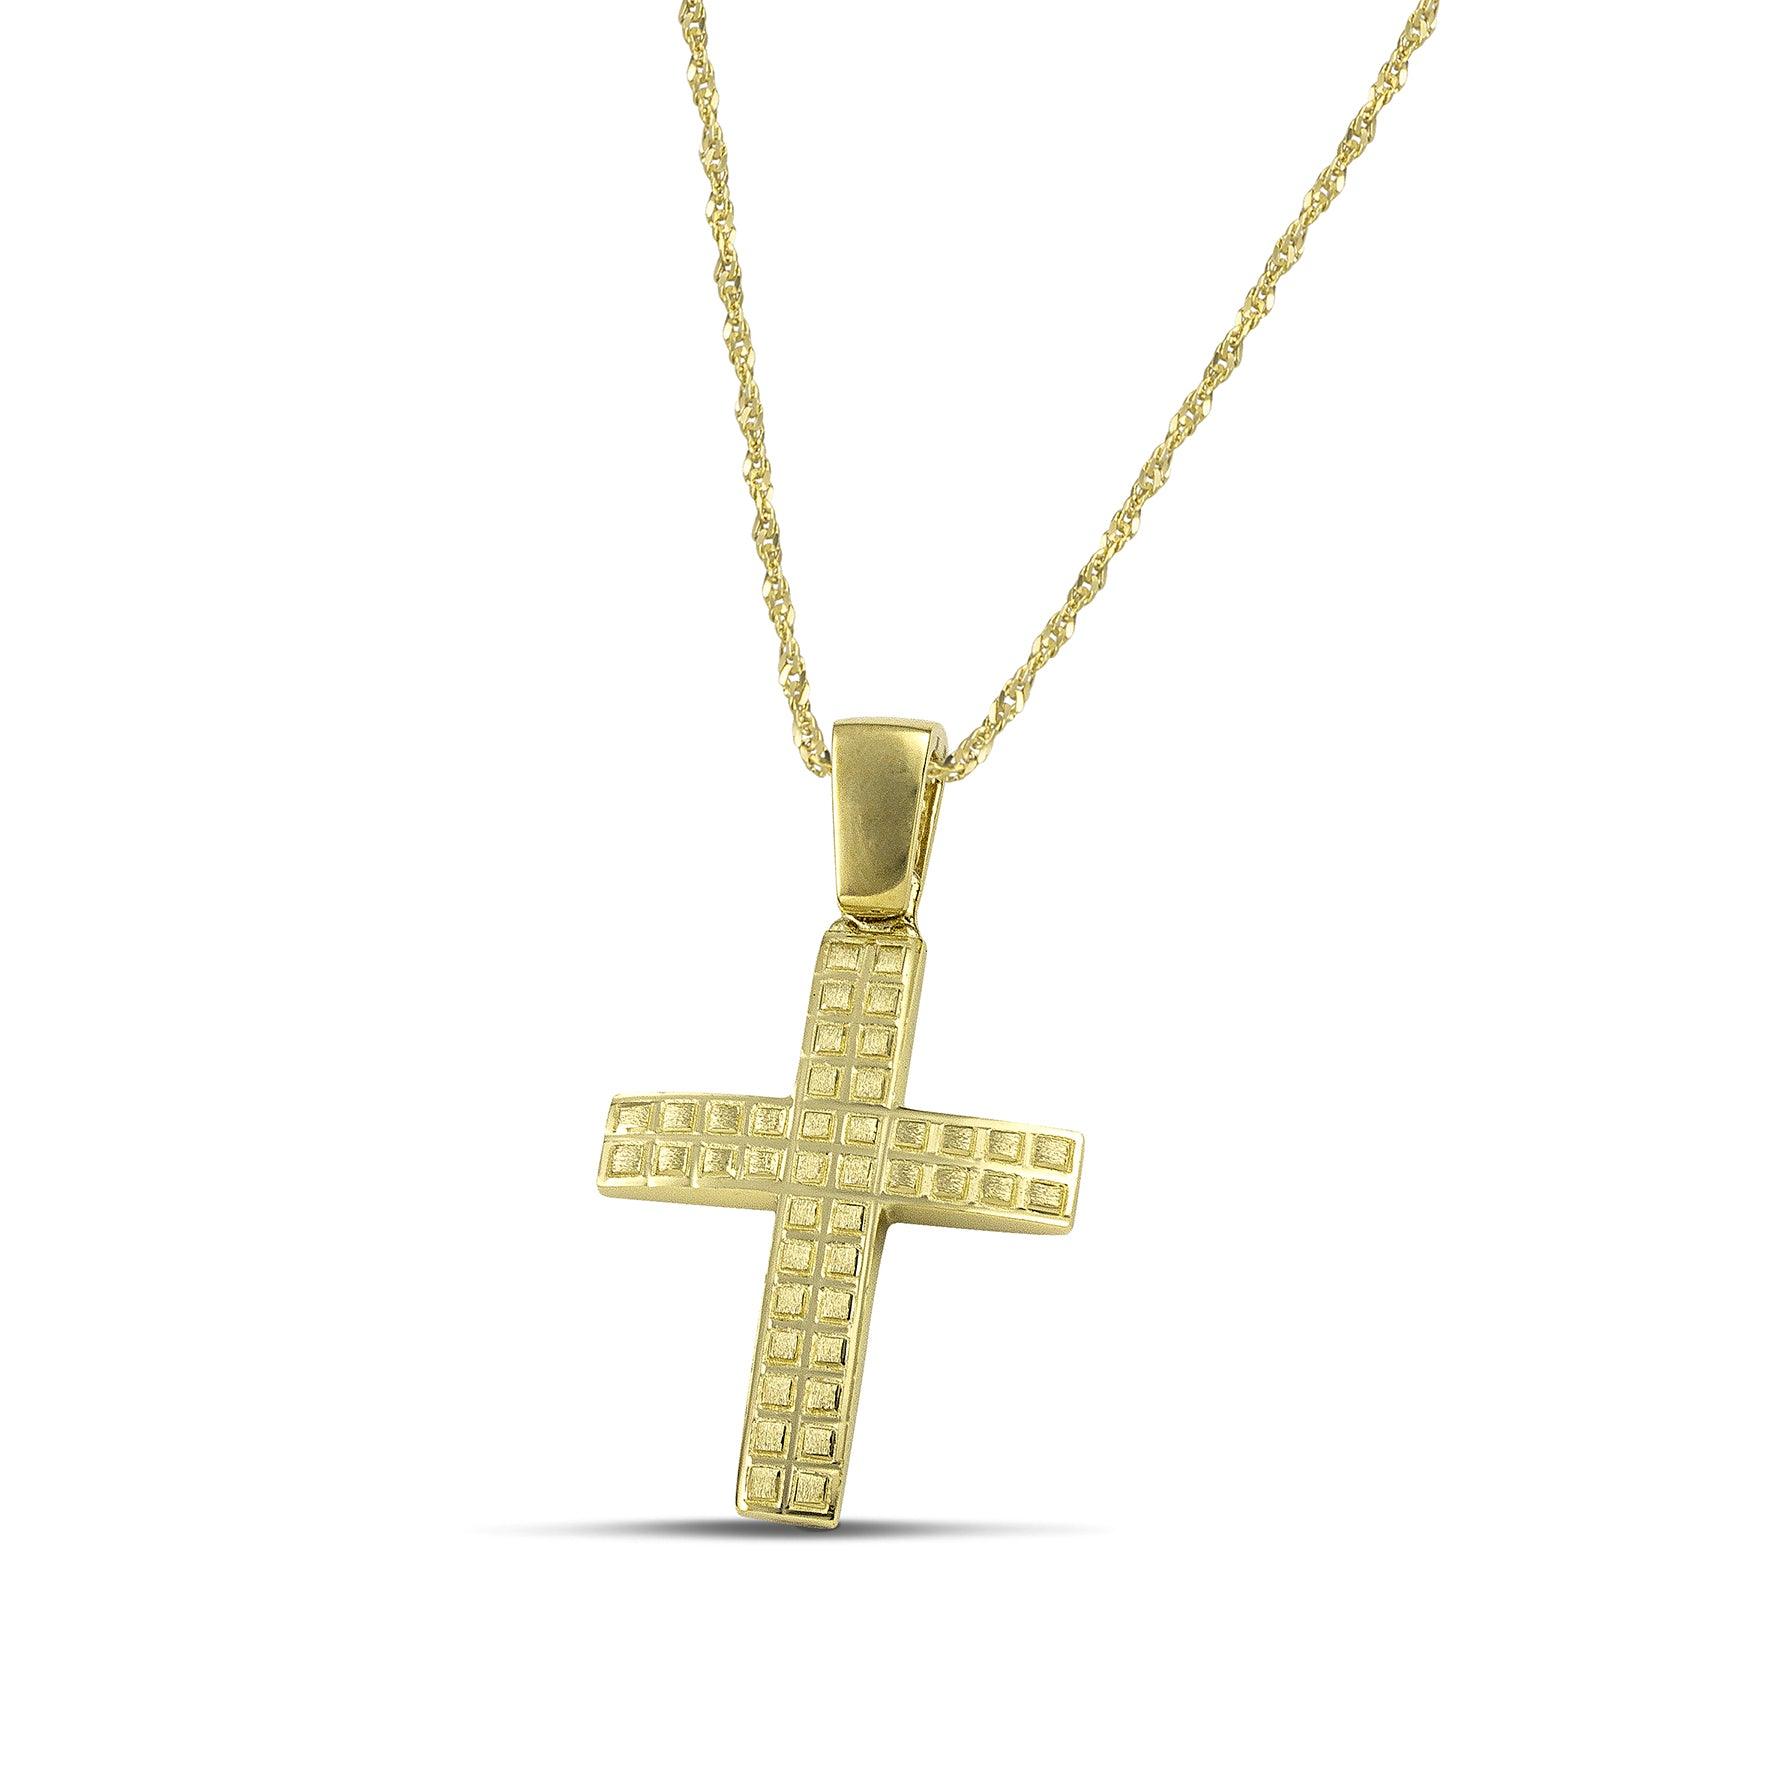 Ανδρικός χρυσός σταυρός βάπτισης με τετράγωνα σχέδια, σε στριφτή αλυσίδα.